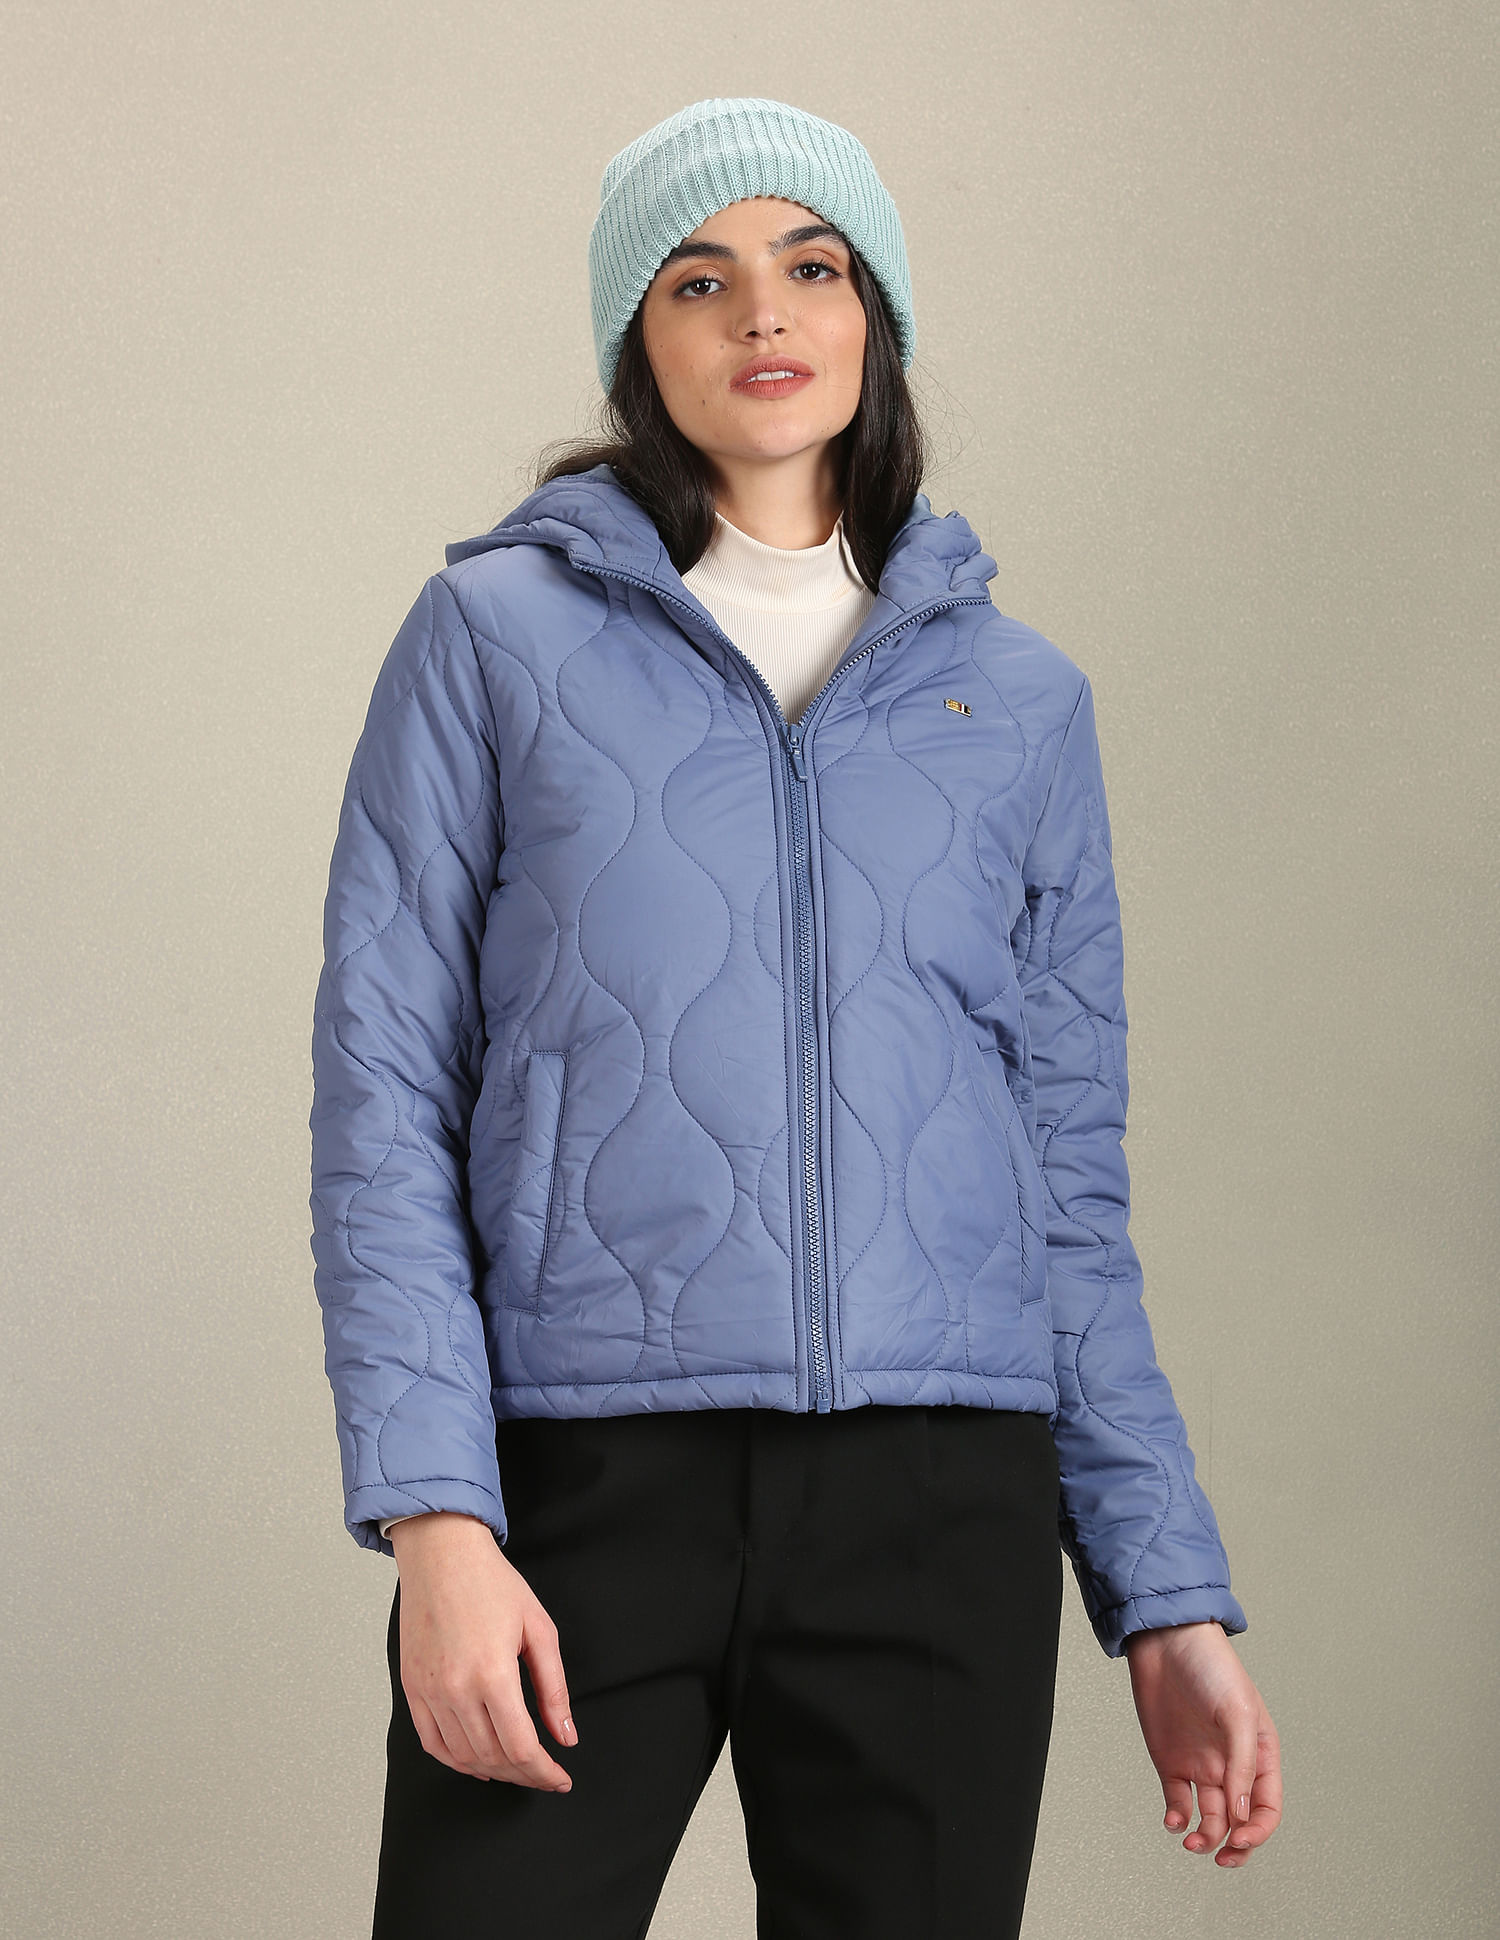 Women's Heavenly™ Hooded Jacket | Columbia Sportswear-atpcosmetics.com.vn